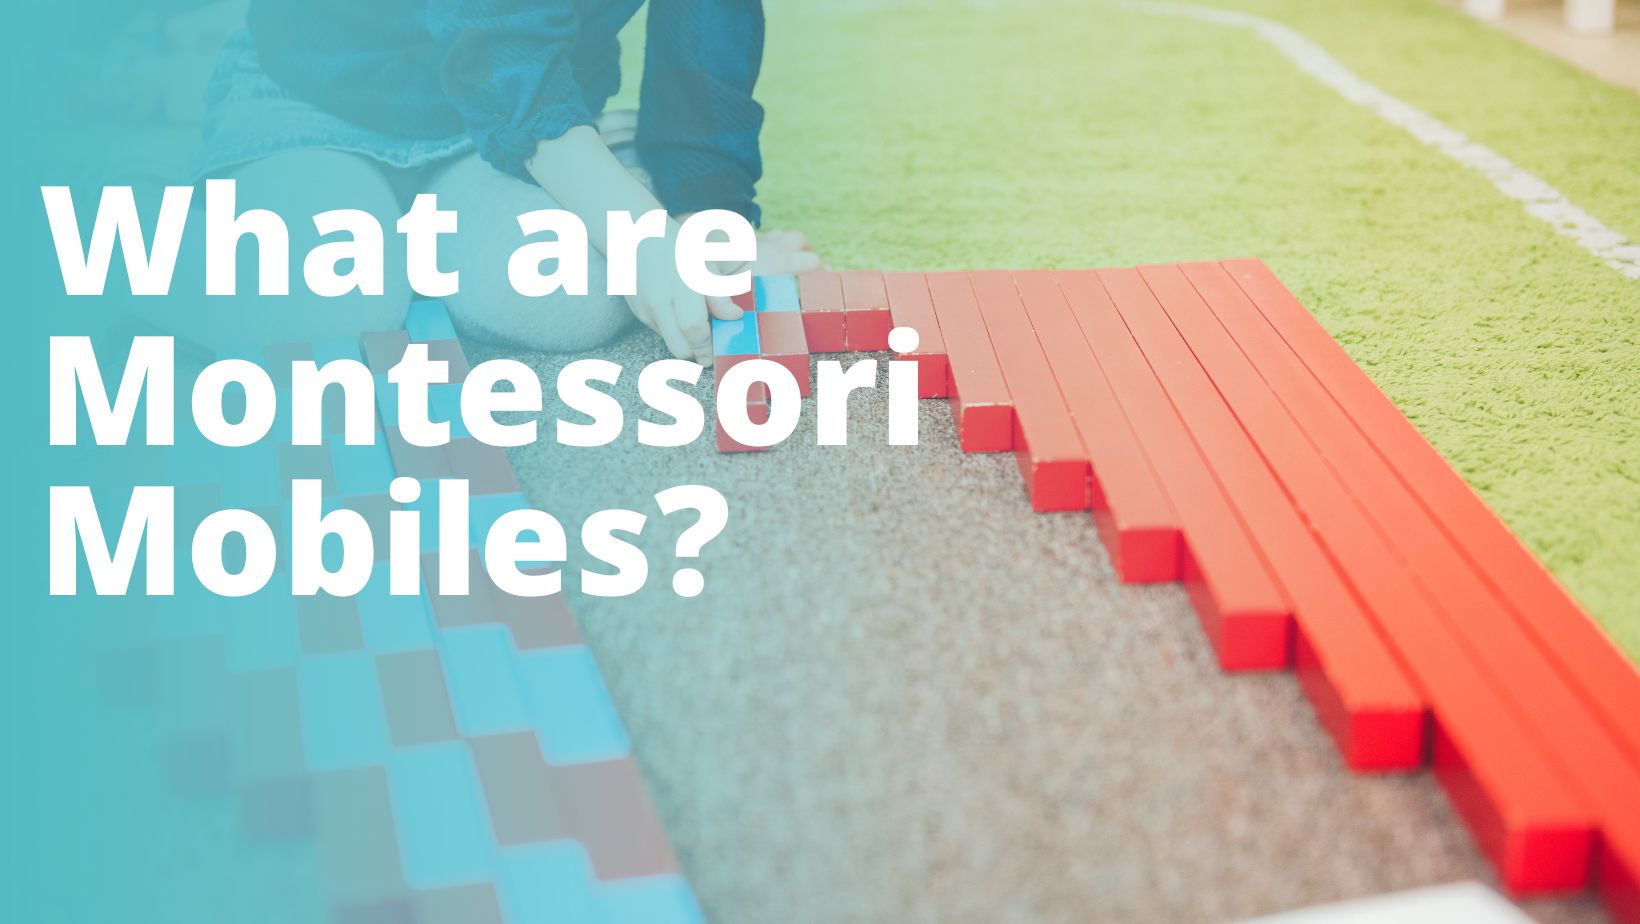 What are Montessori Mobiles?